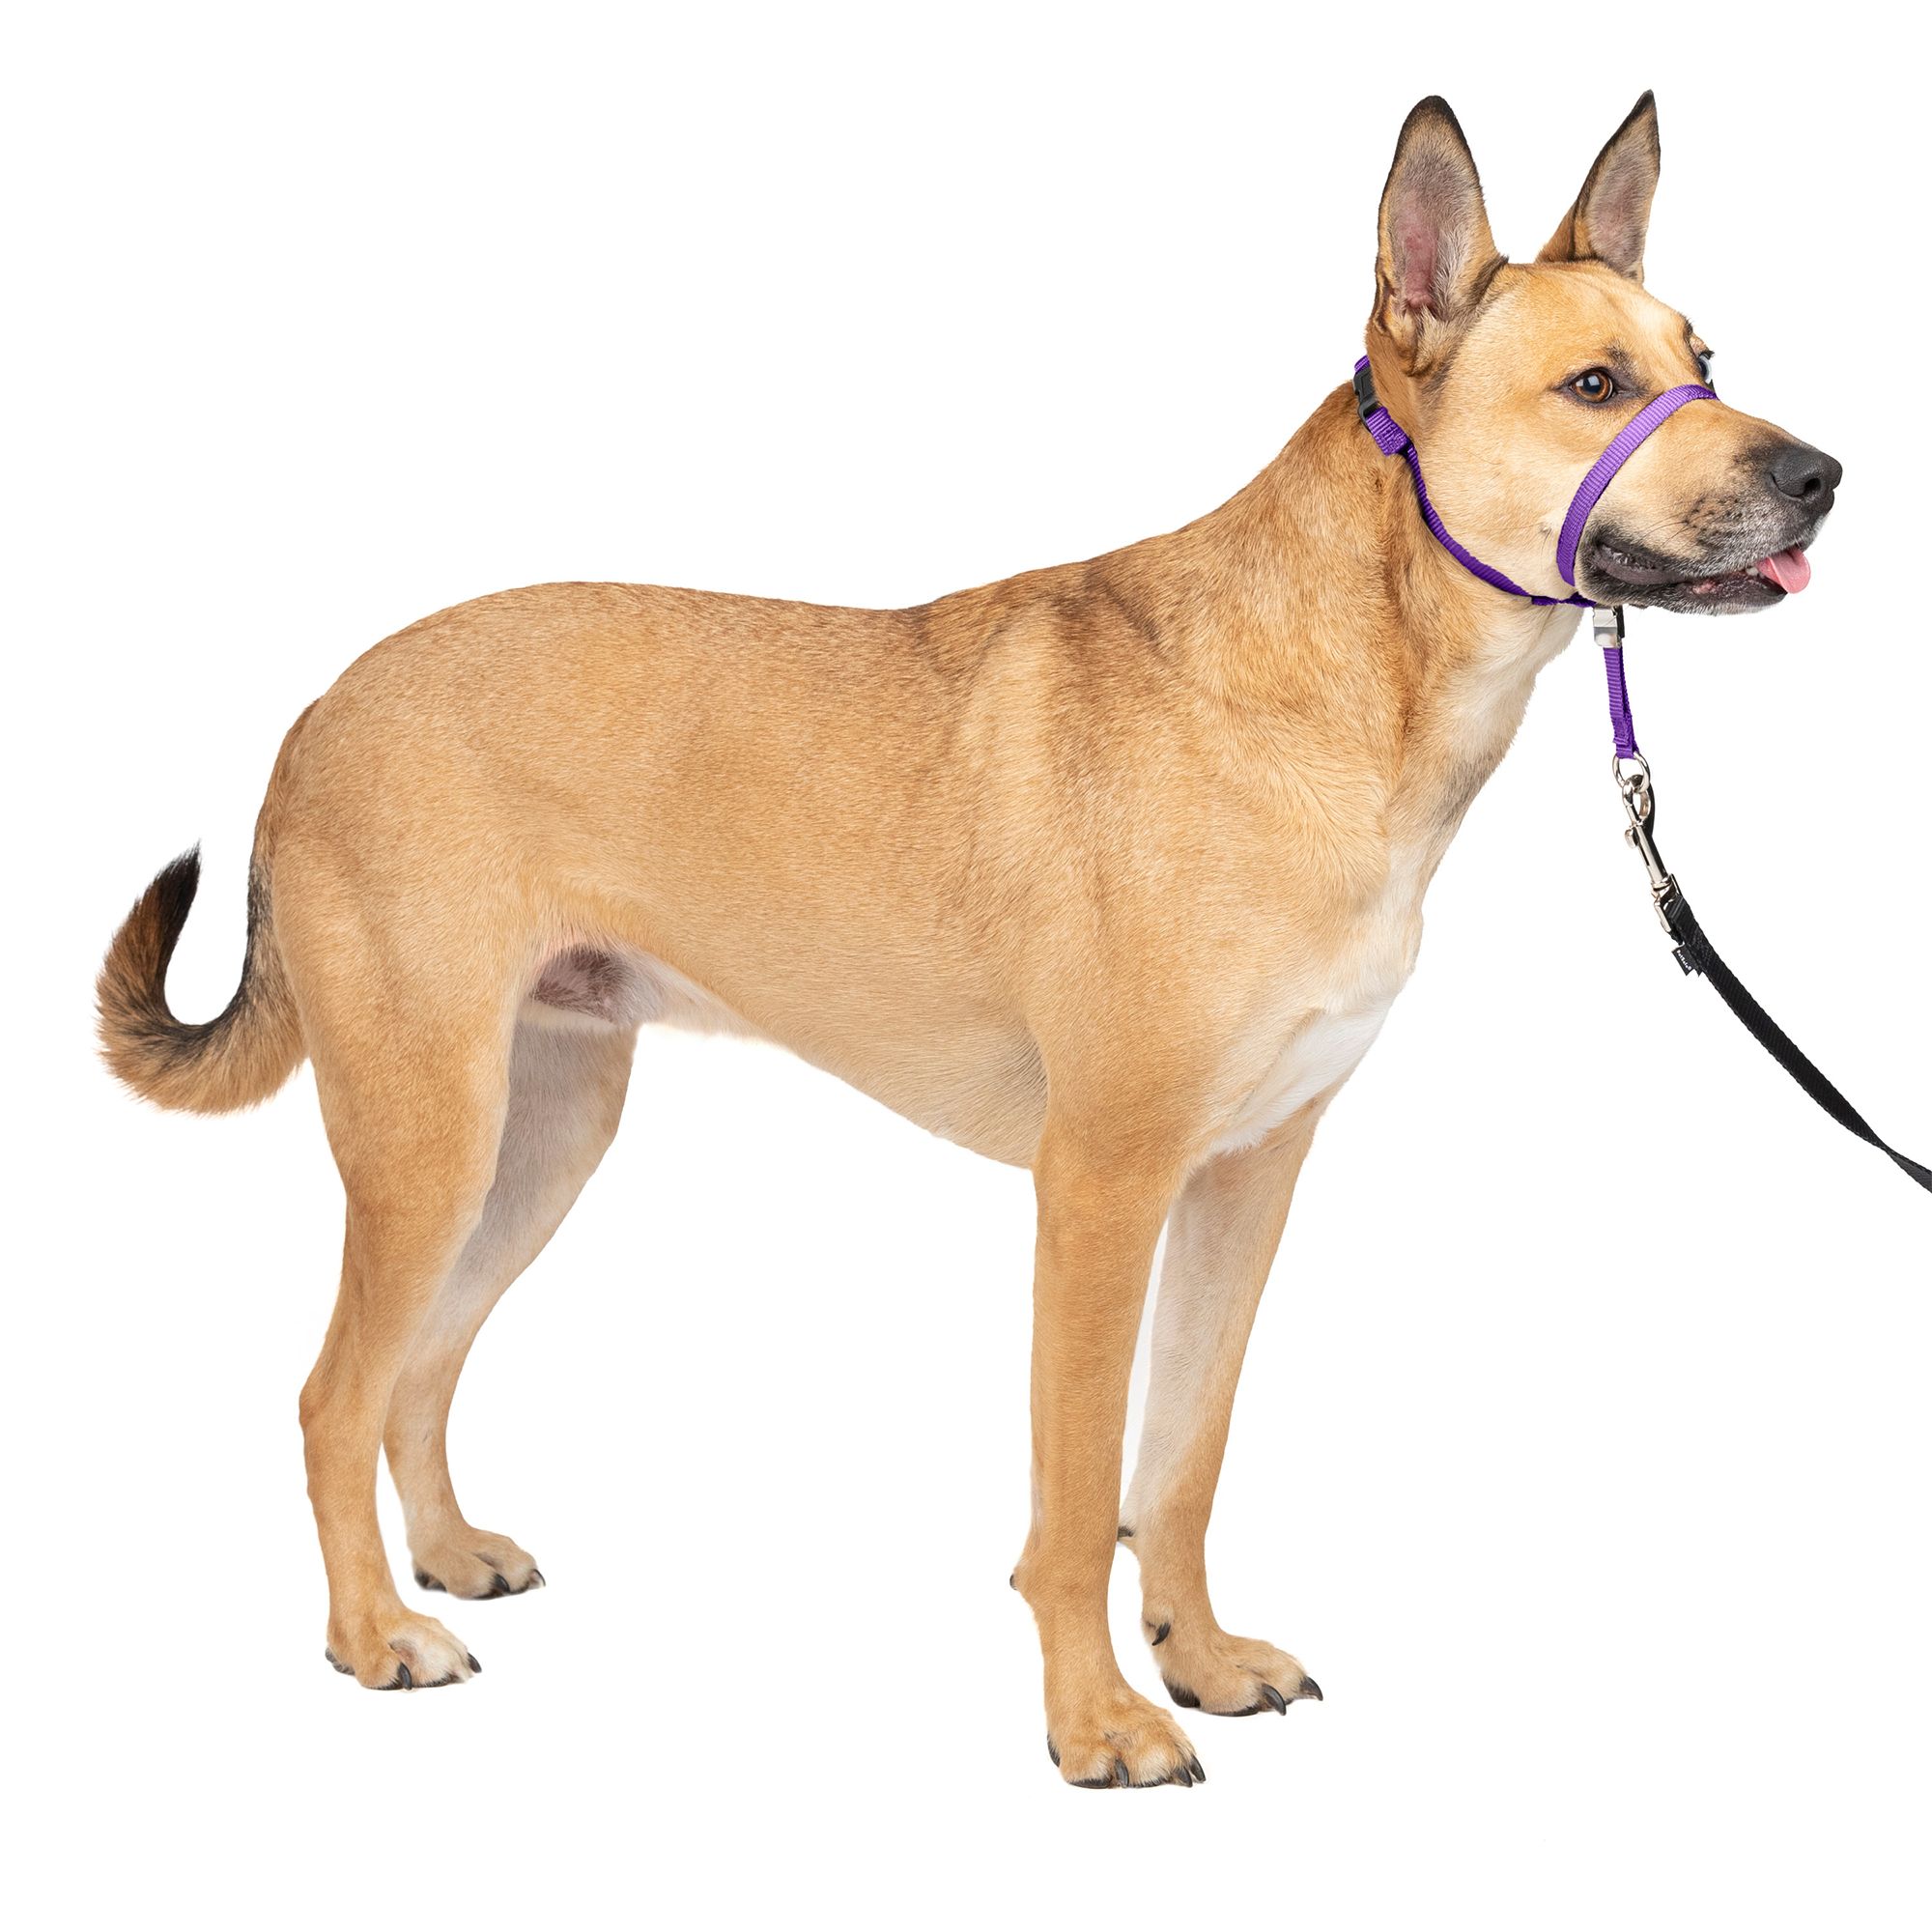 PetSafe® Gentle Leader® Training Dog 